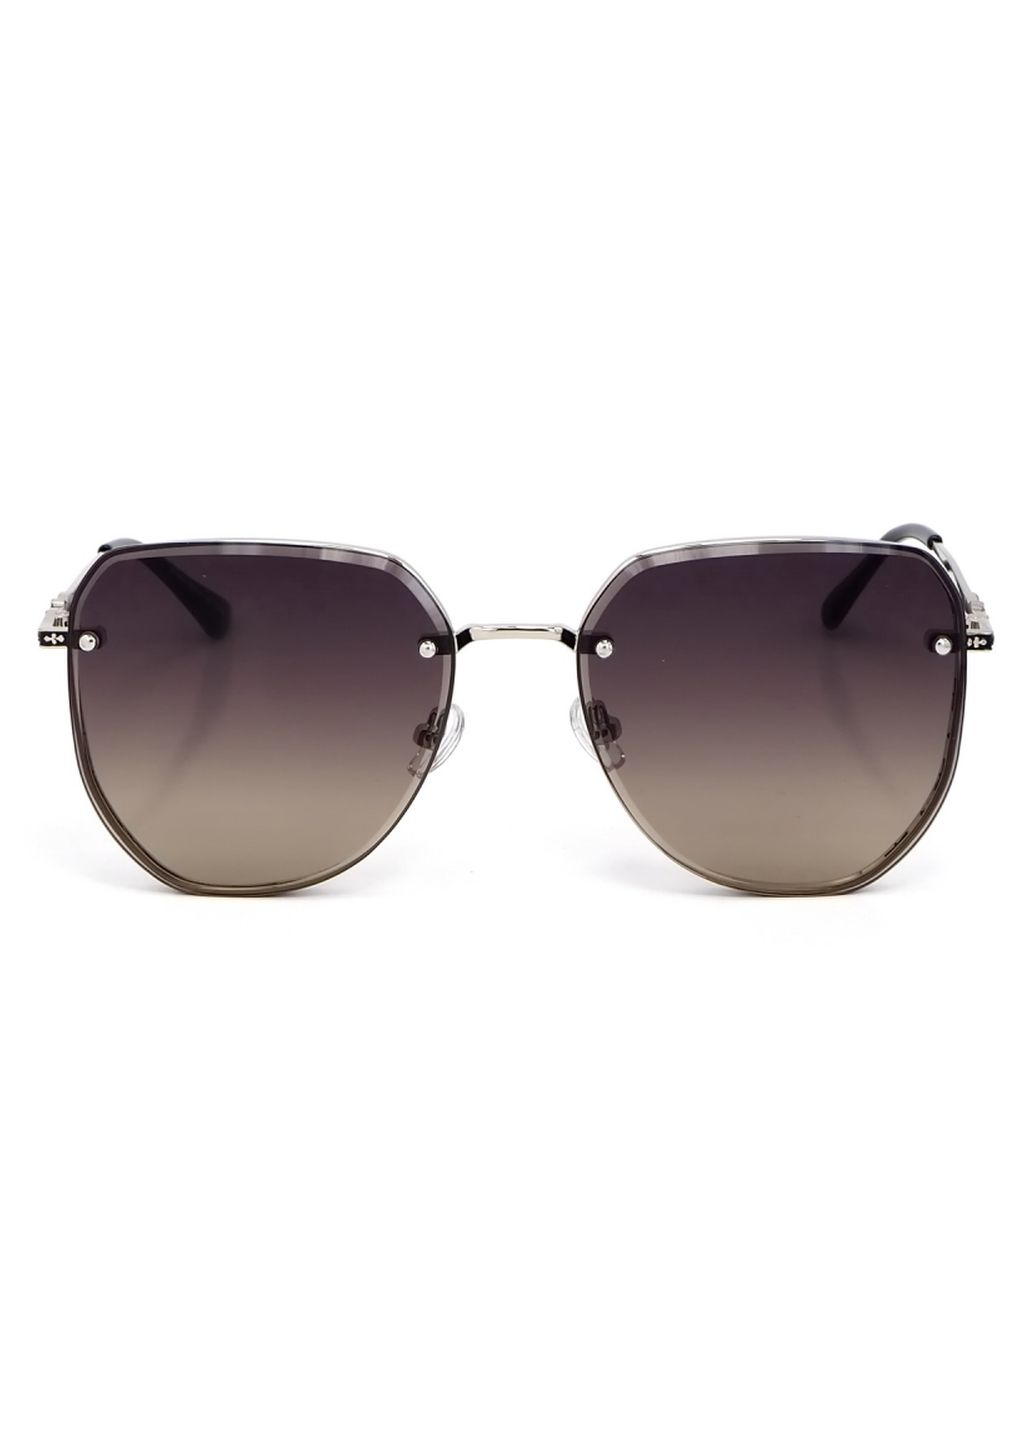 Купить Женские солнцезащитные очки Merlini с поляризацией S31842 117126 - Серебристый в интернет-магазине